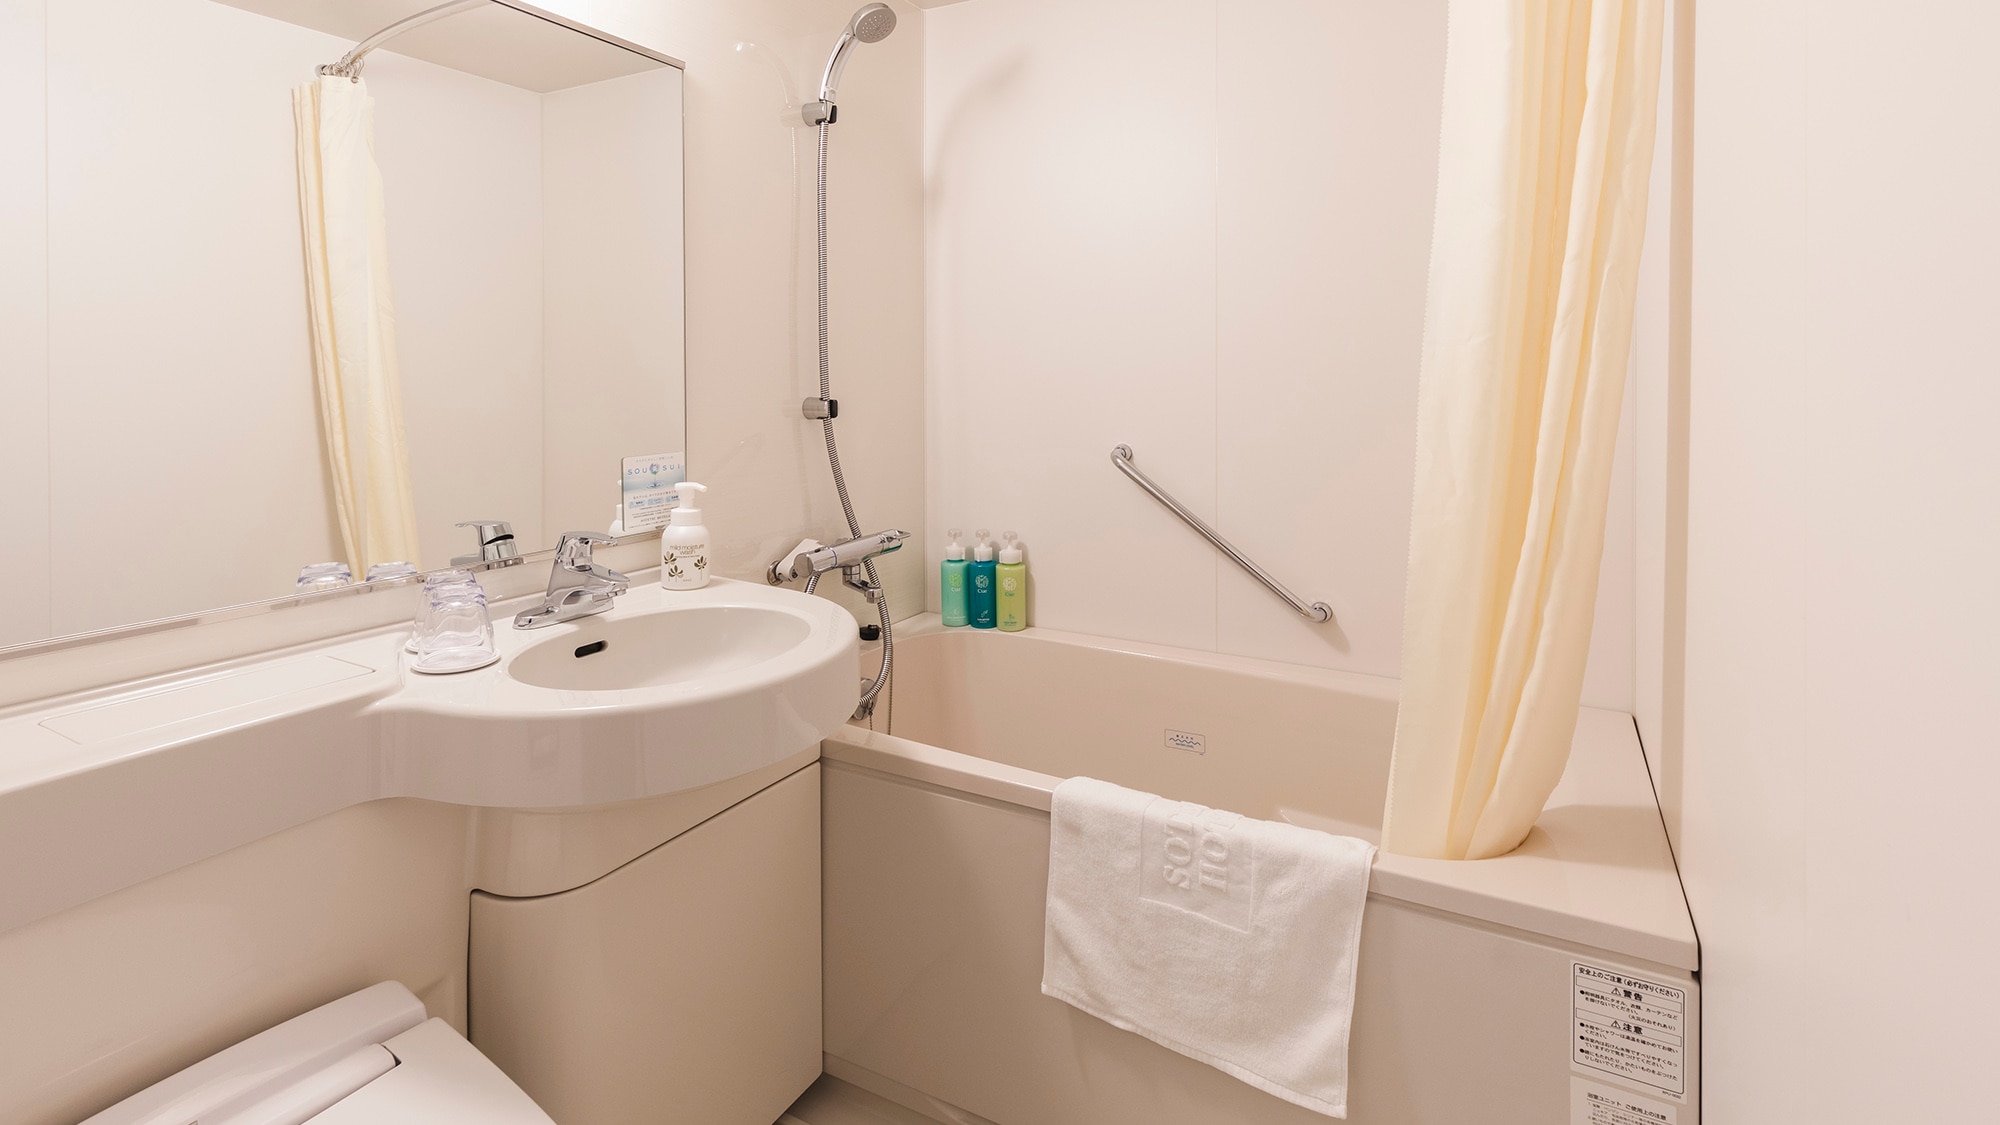 ・[Kamar mandi kembar] Anda dapat meregangkan anggota tubuh dan bersantai di bak mandi yang dalam.